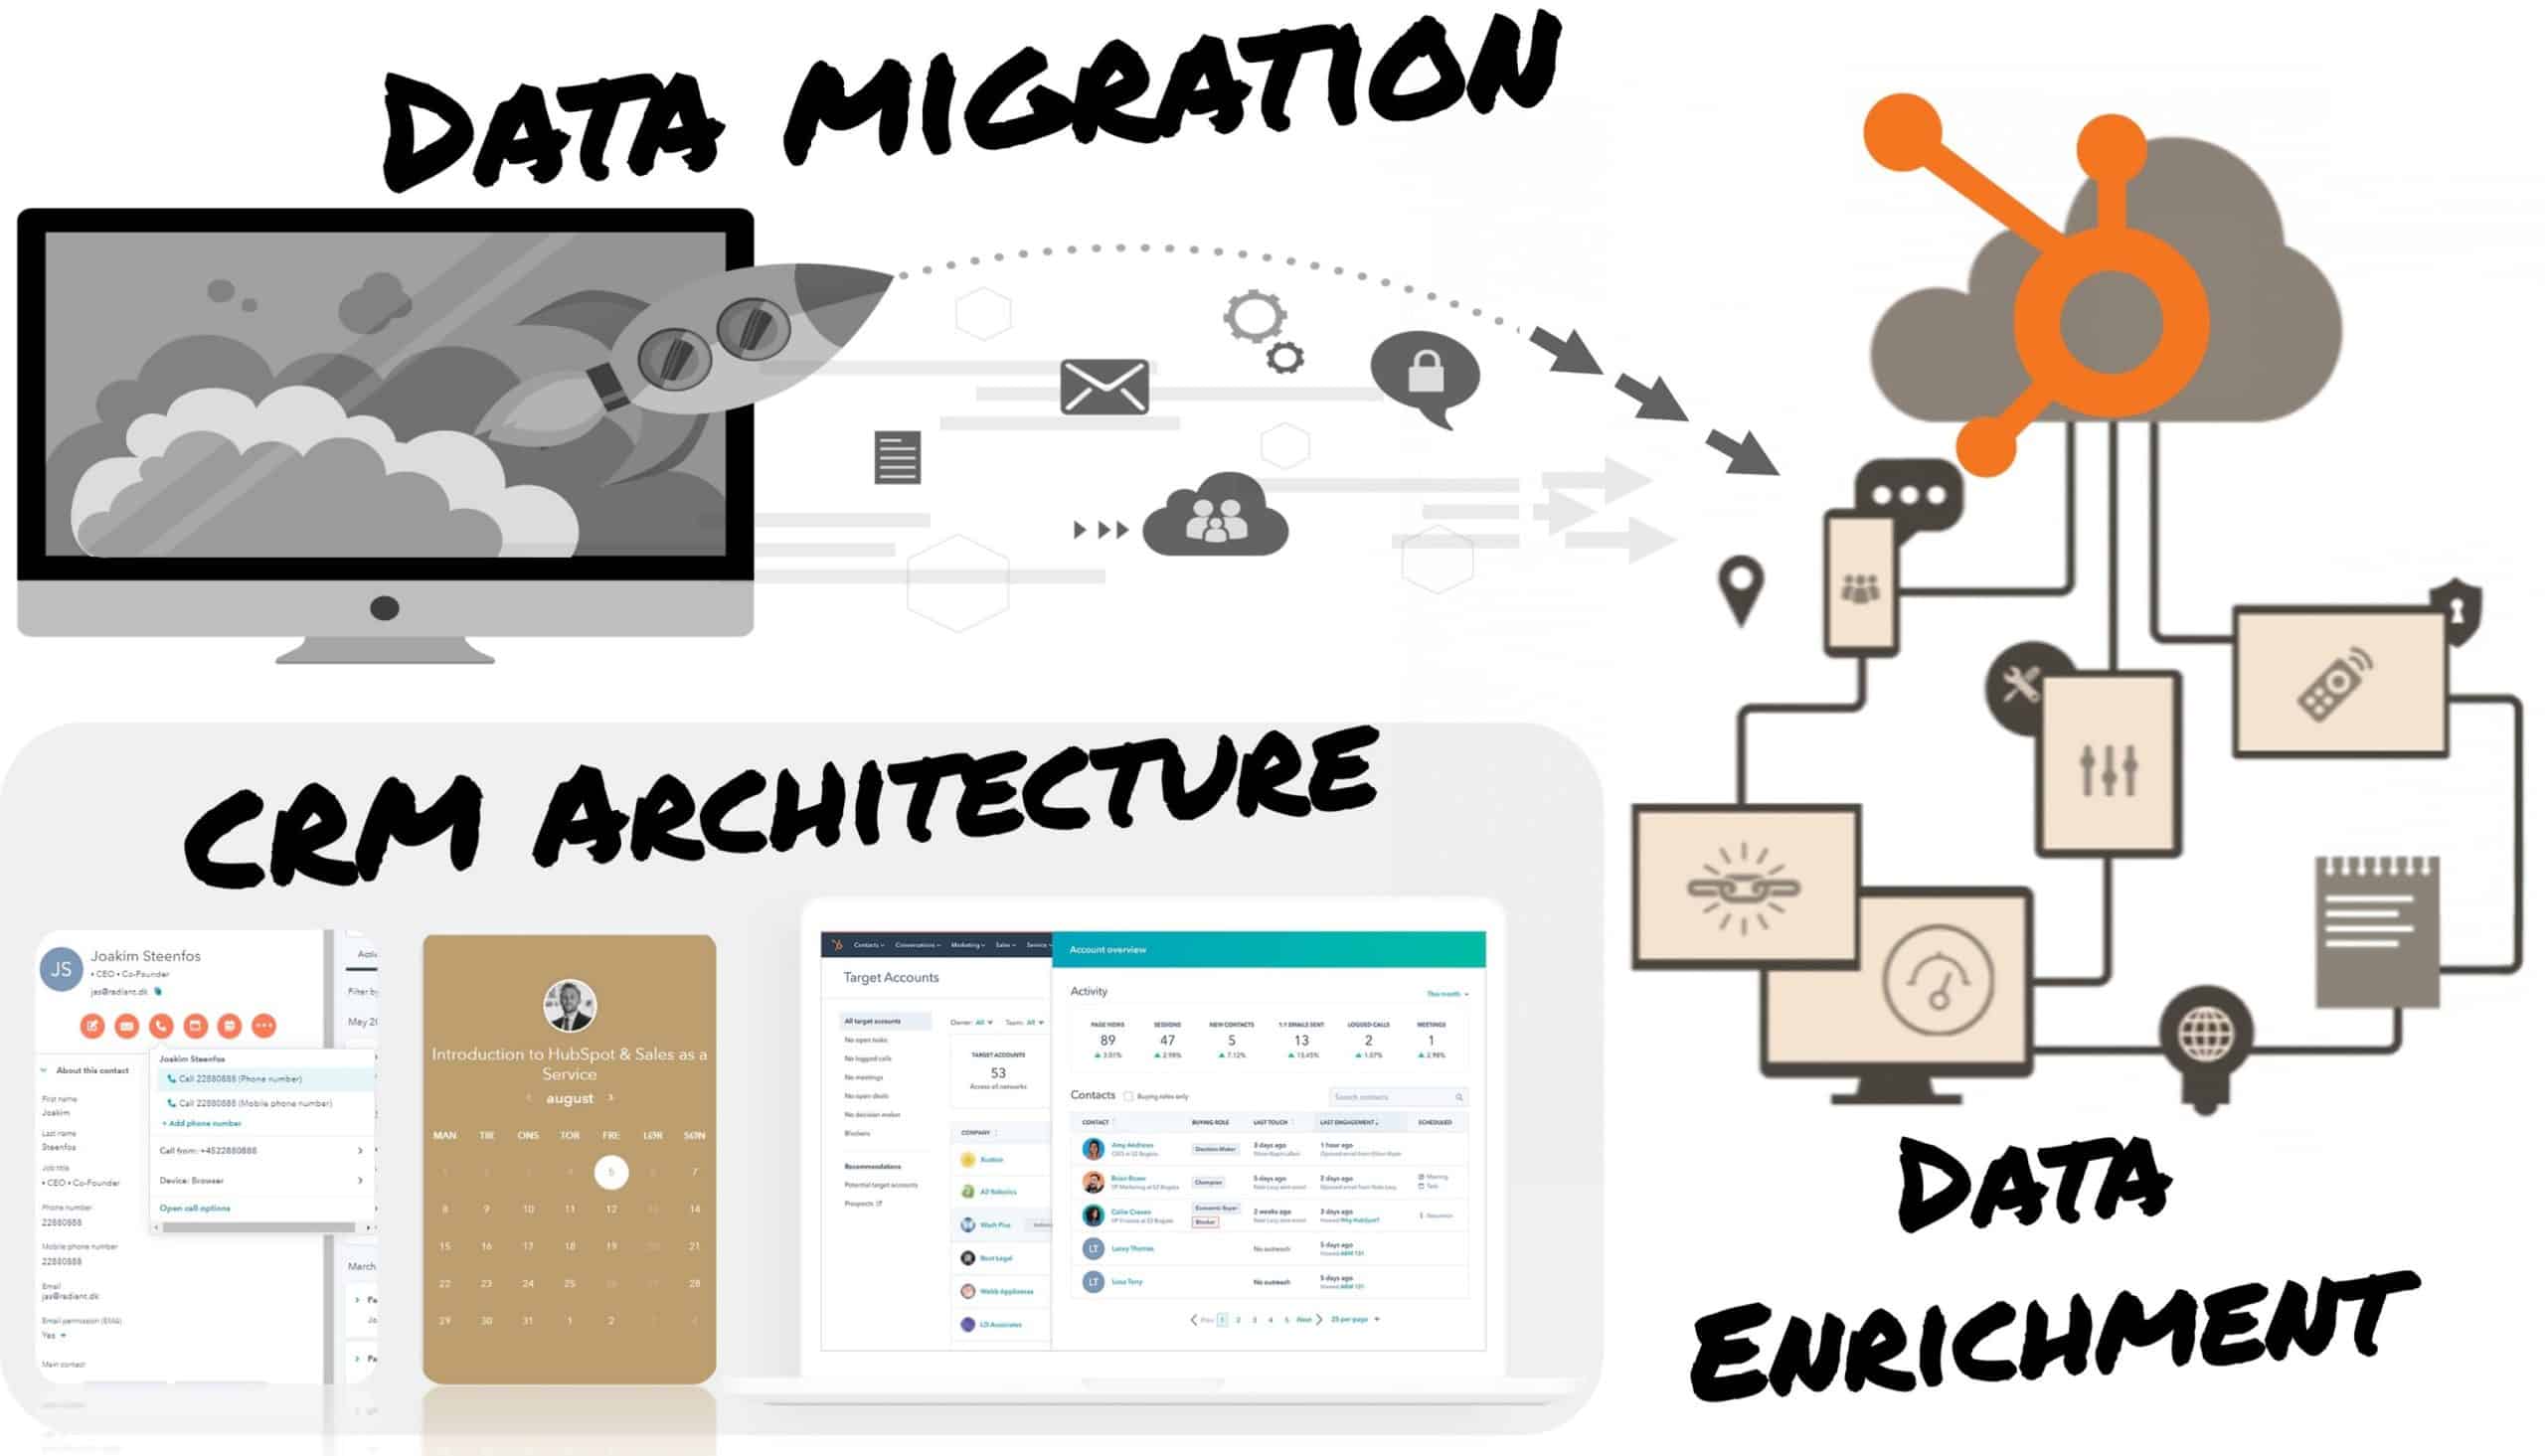 Data Migration HubSpot Partner 